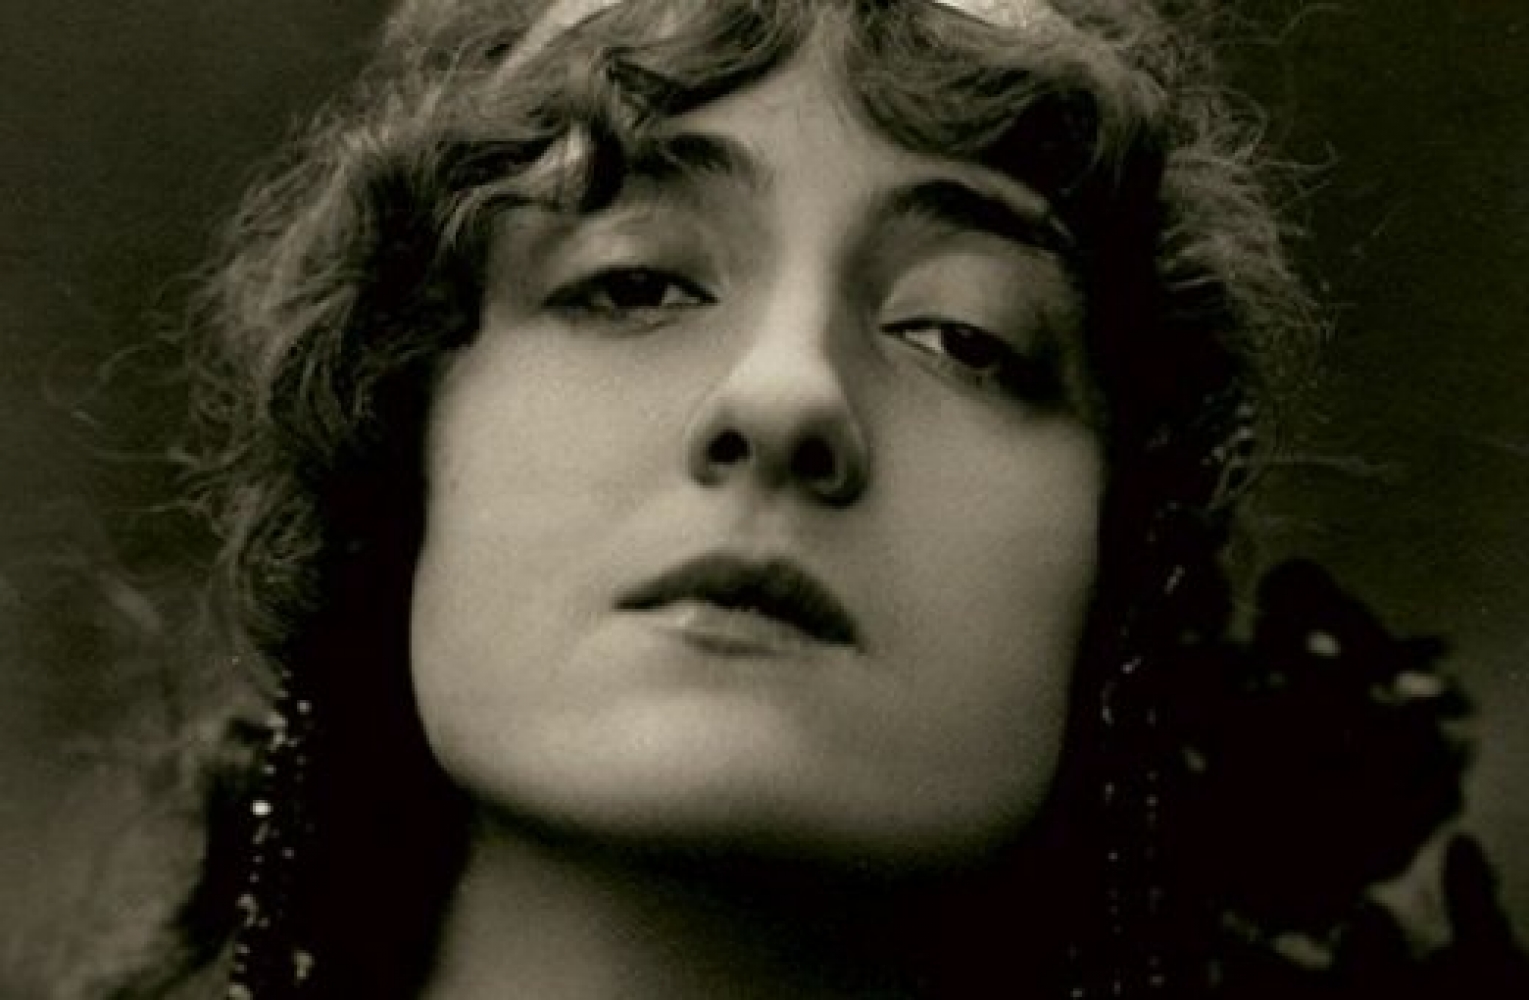 Lyda Borelli primadonna del Novecento